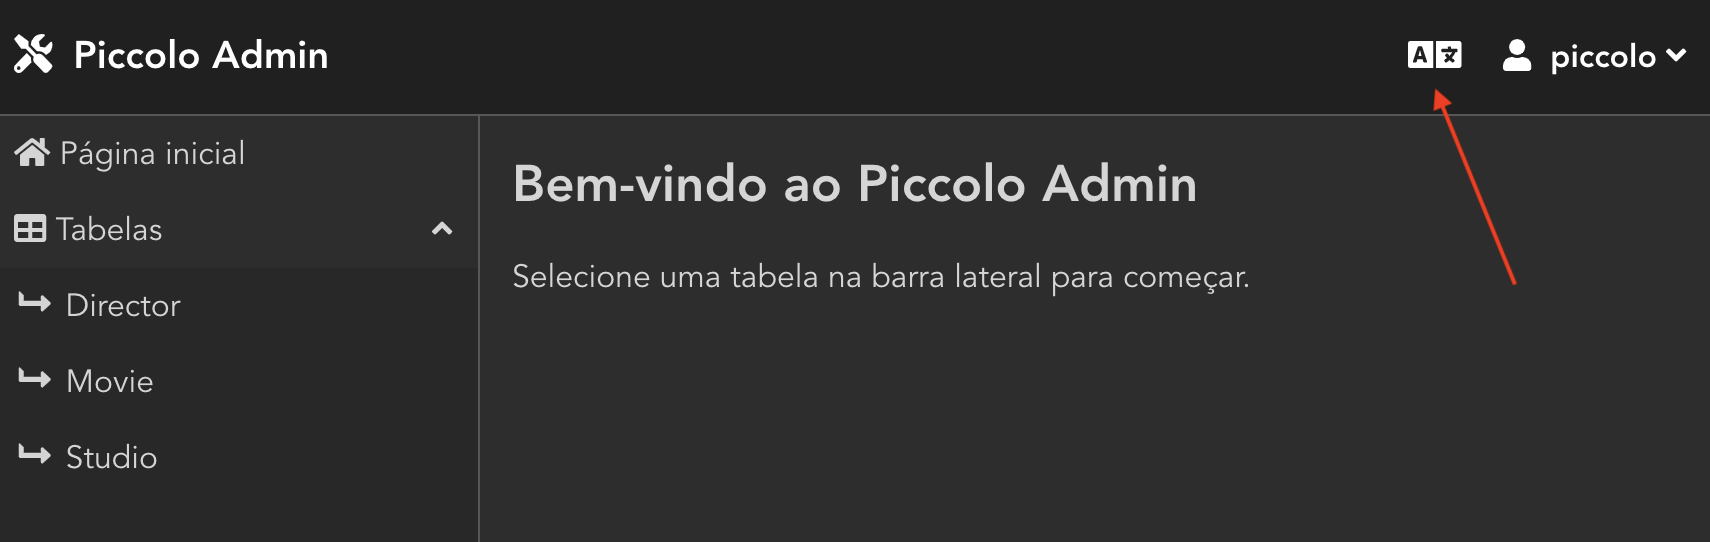 Piccolo Admin multilingual support - Portguese